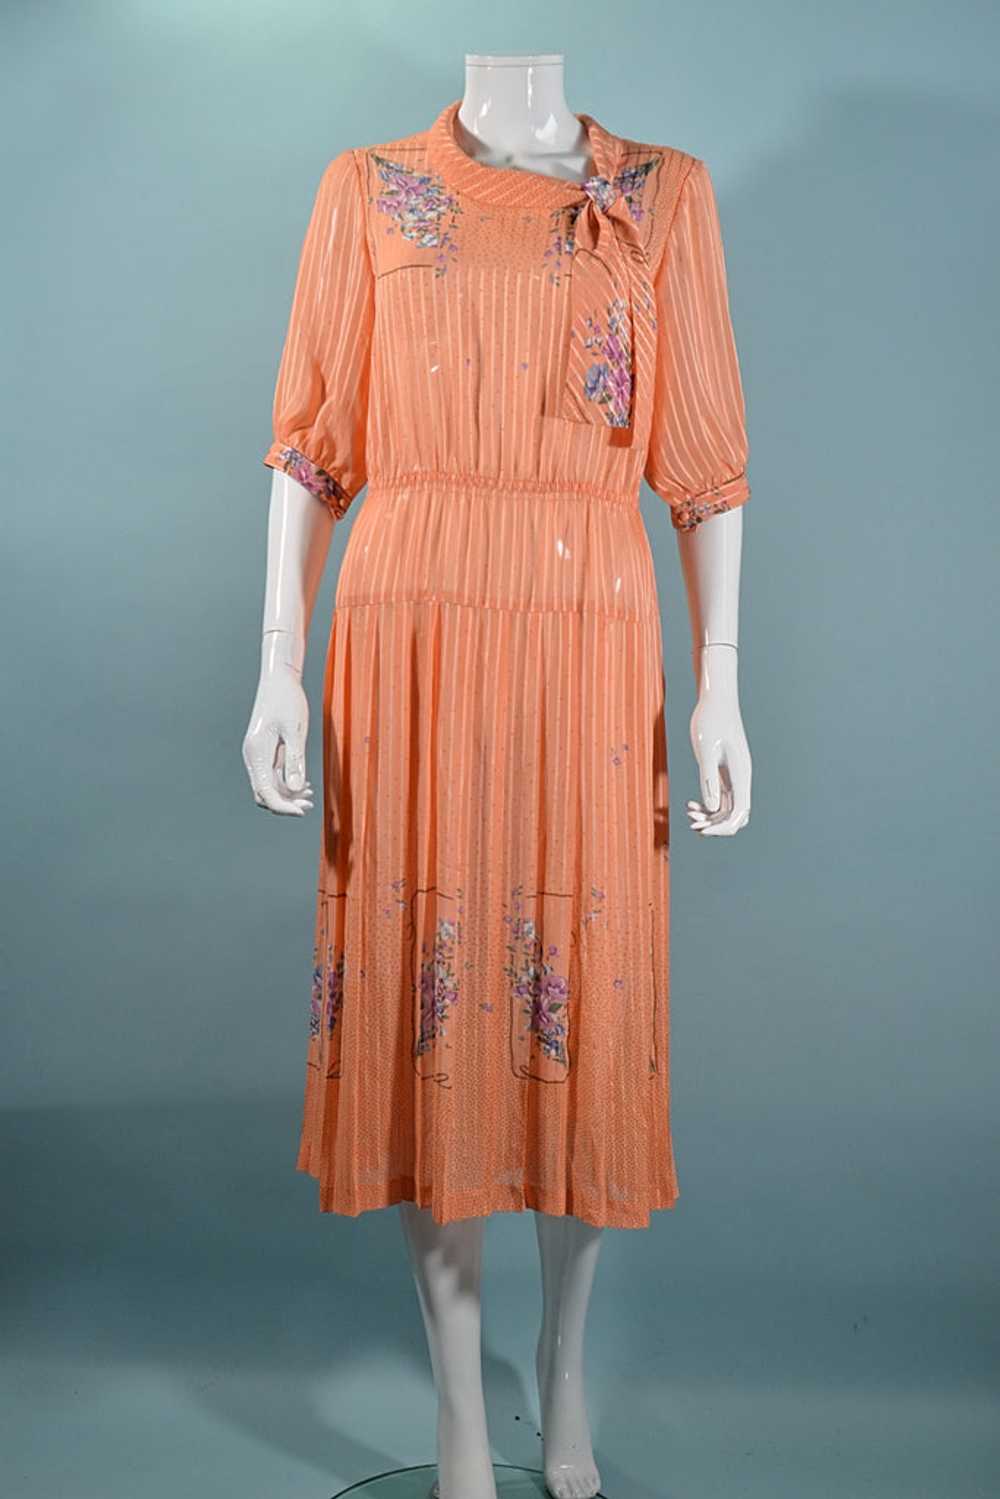 Vintage 70s Does 30s Floral Print Dress, Peach Se… - image 4